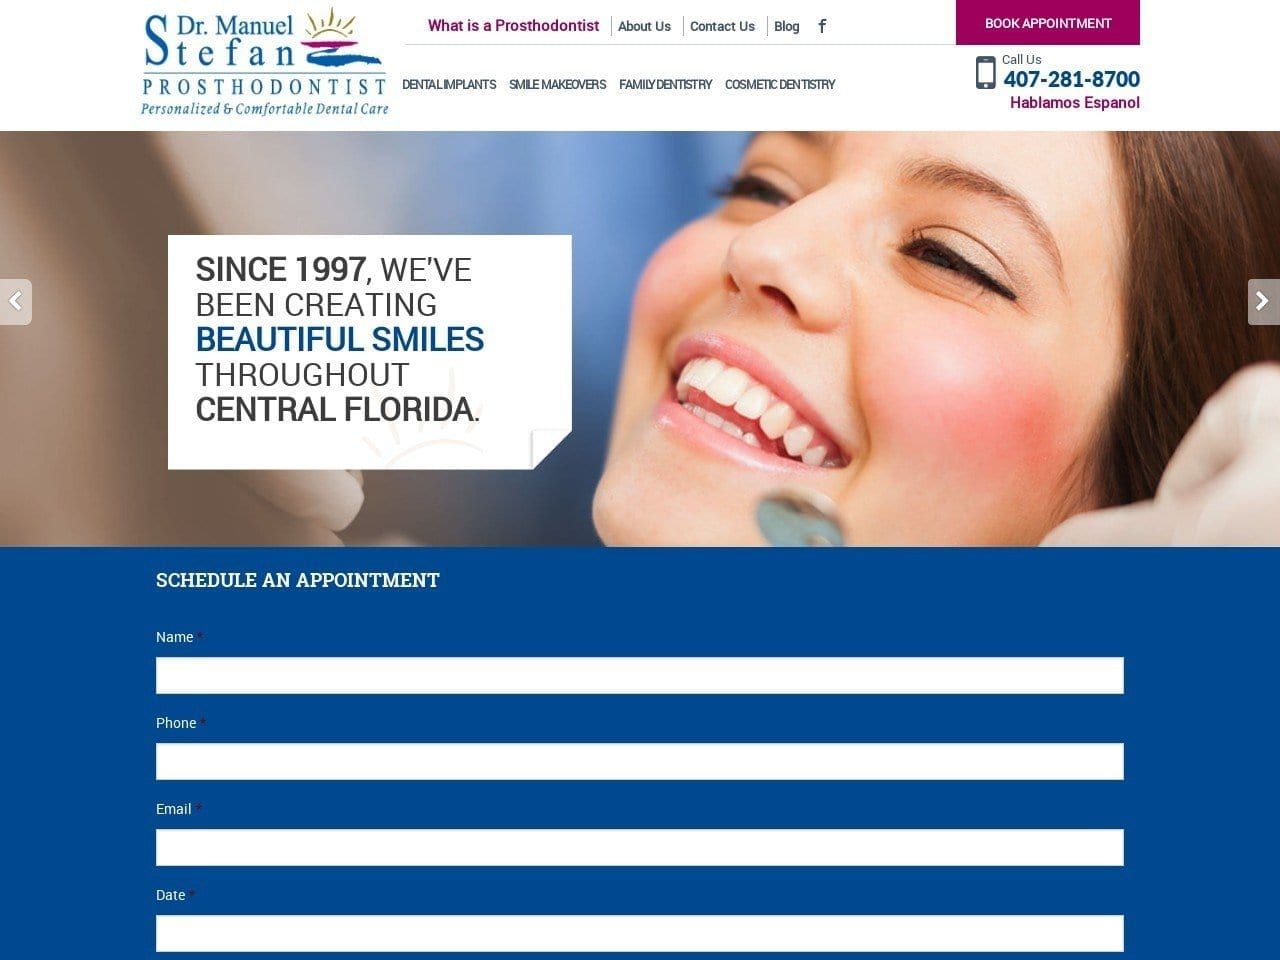 Manuel Stefan Dental Care Website Screenshot from manuelstefandentalcare.com